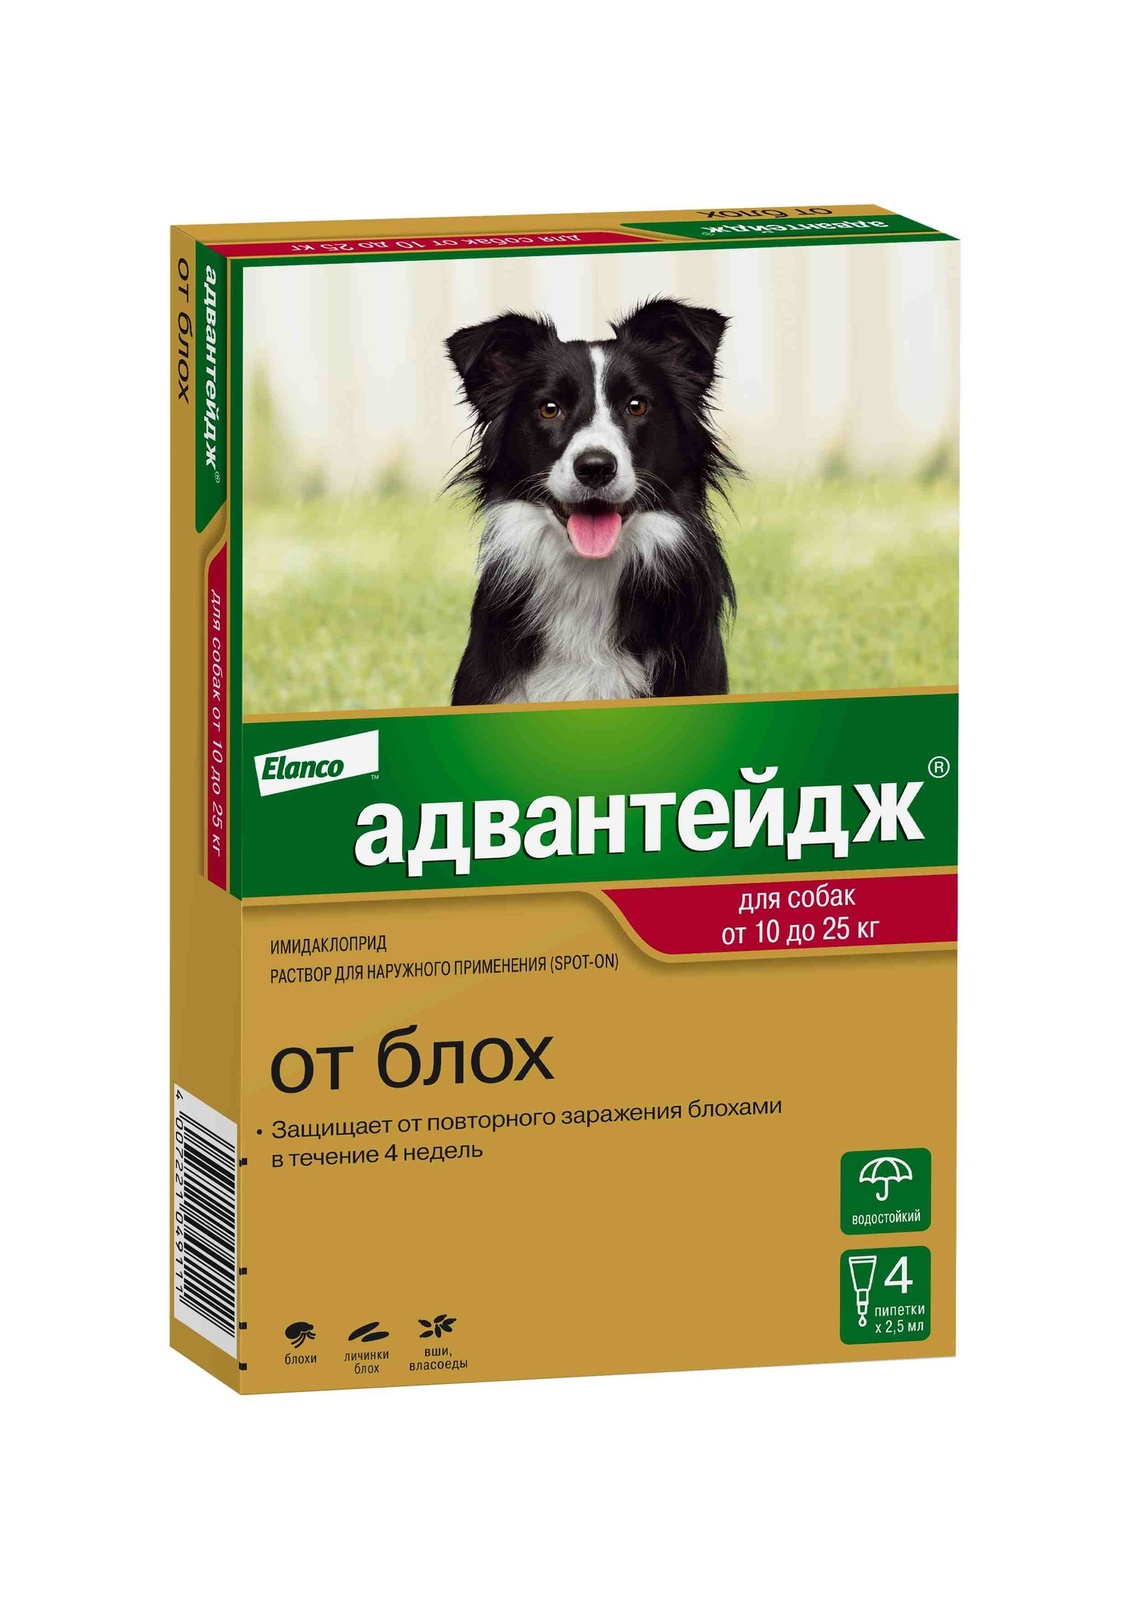 Elanco капли на холку Адвантейдж®  от блох для собак от 10 до 25 кг – 4 пипетки (590 г)